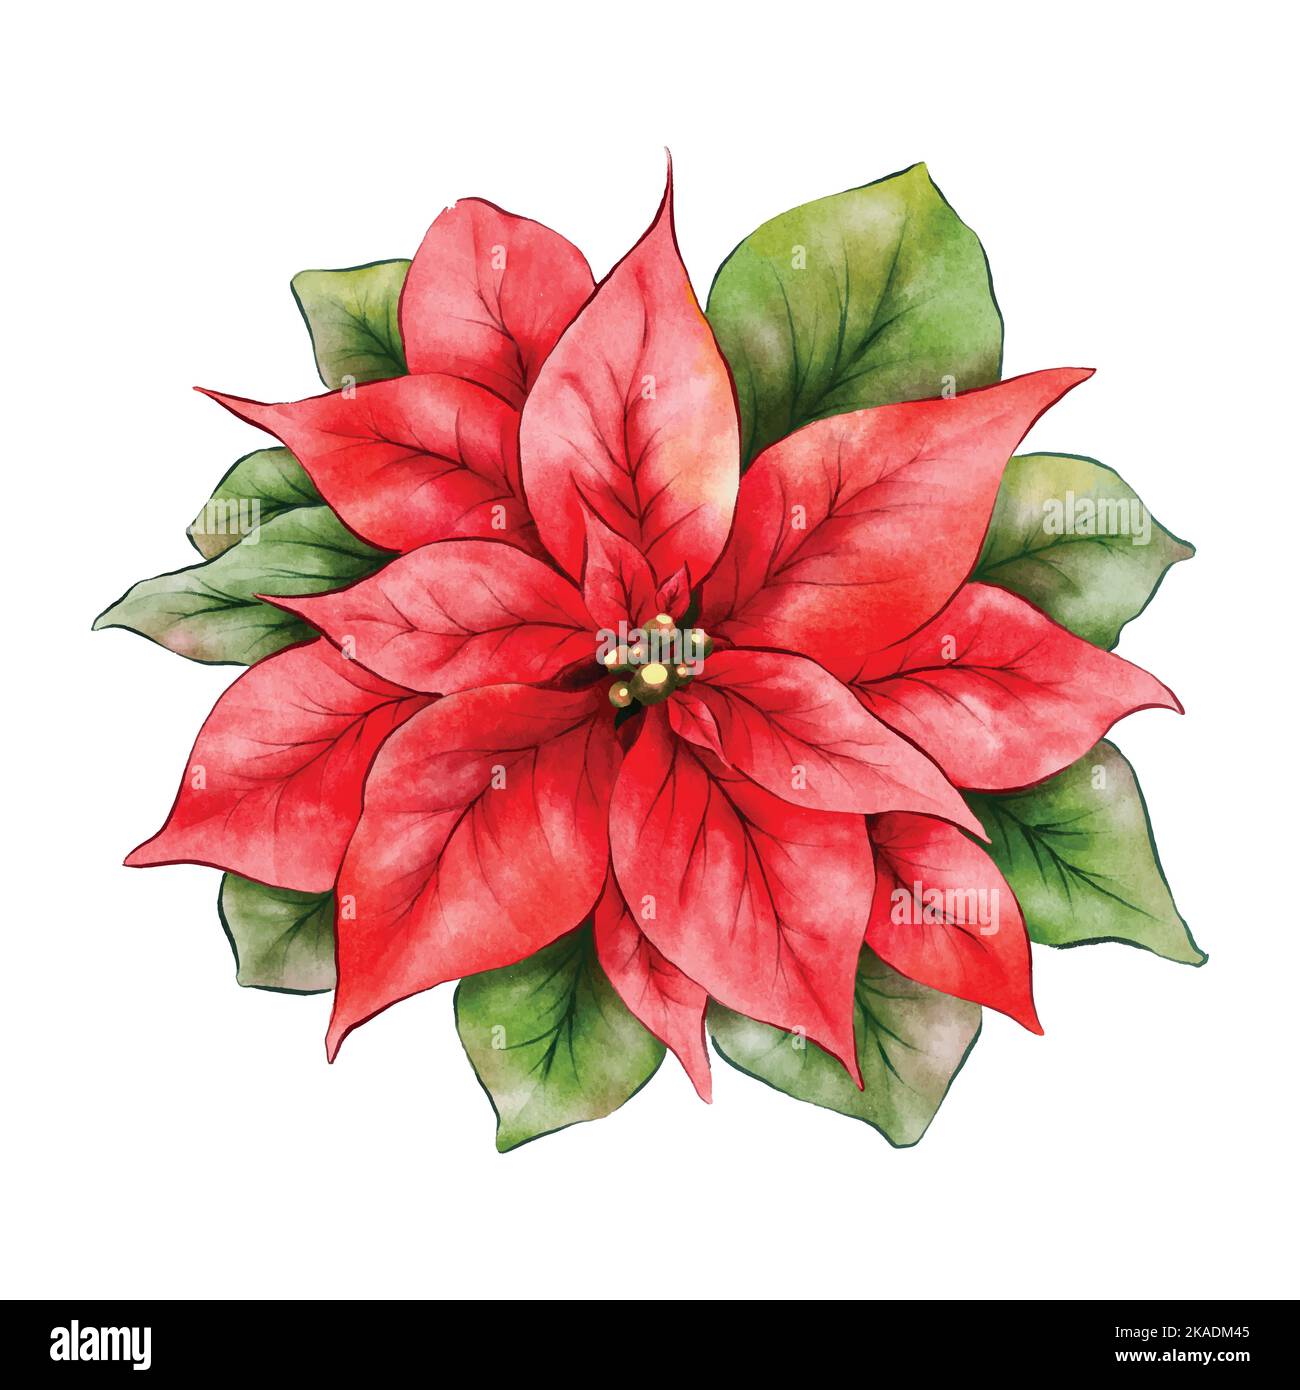 Noël poinsettia fleur aquarelle illustration isolée sur fond blanc. Elément vectoriel adapté aux fêtes de Noël, hiver, Illustration de Vecteur